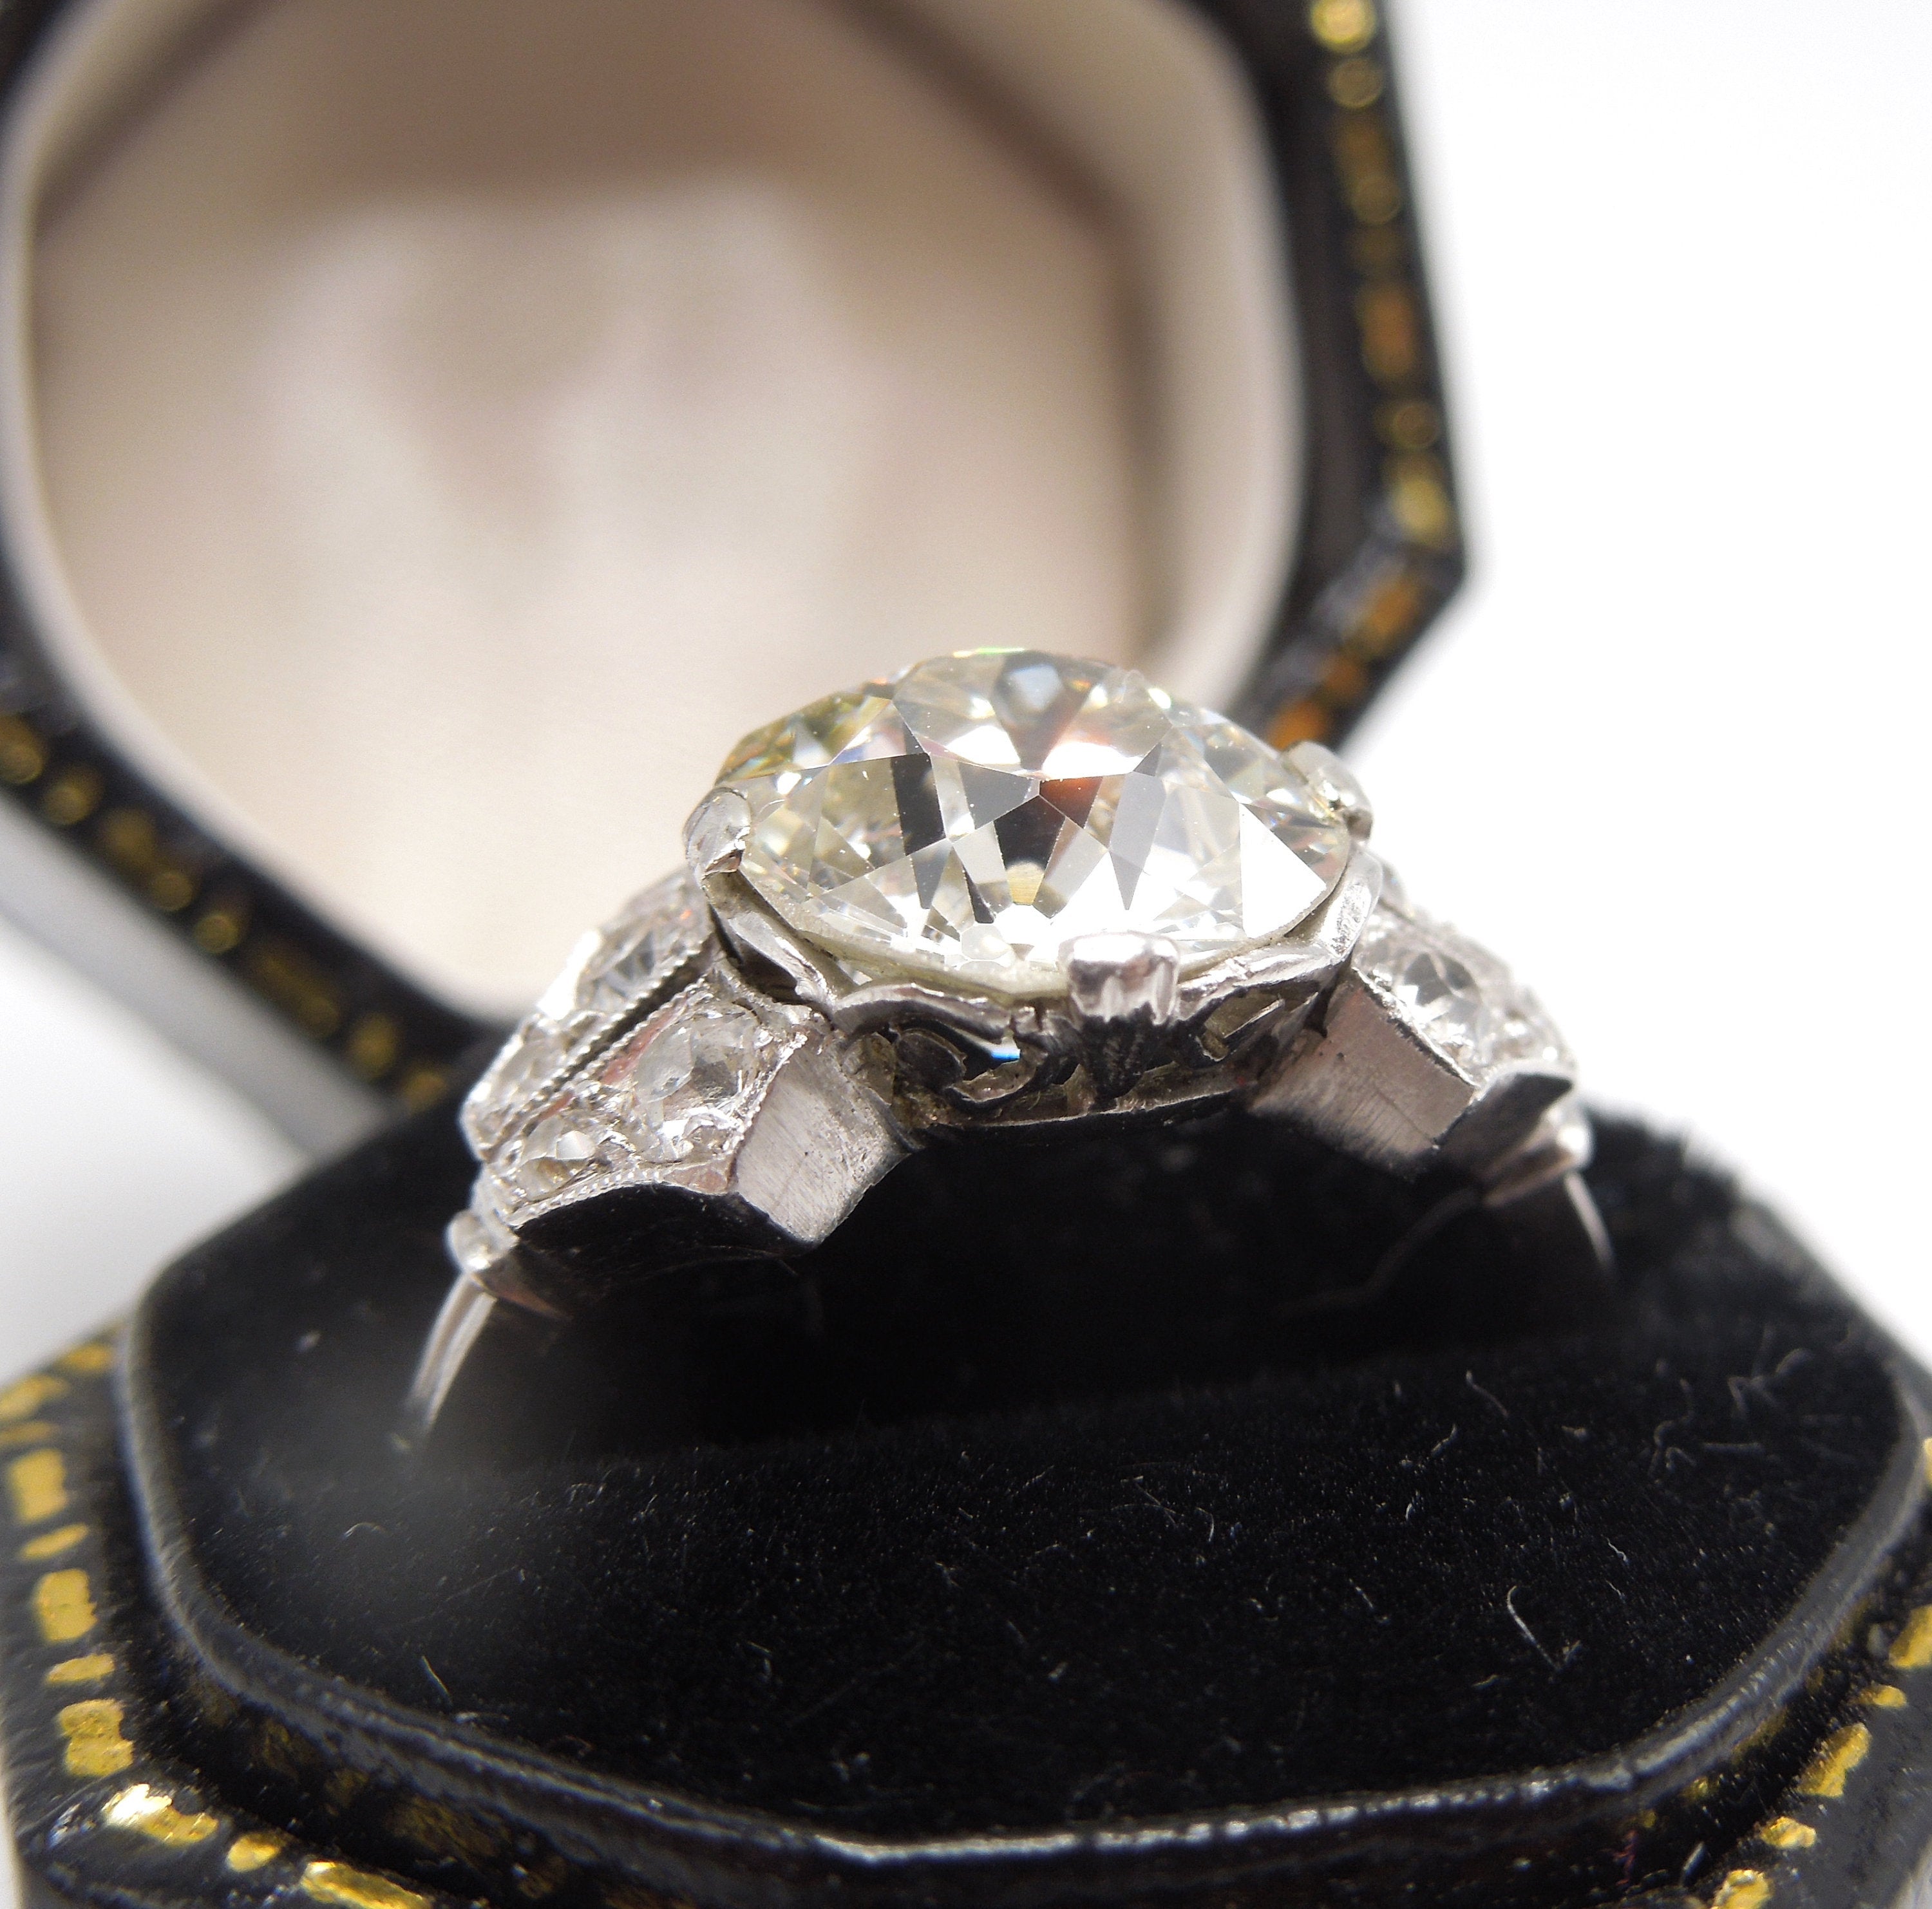 2.19 carat GIA Old European Cut Edwardian Diamond Engagement Ring in Platinum